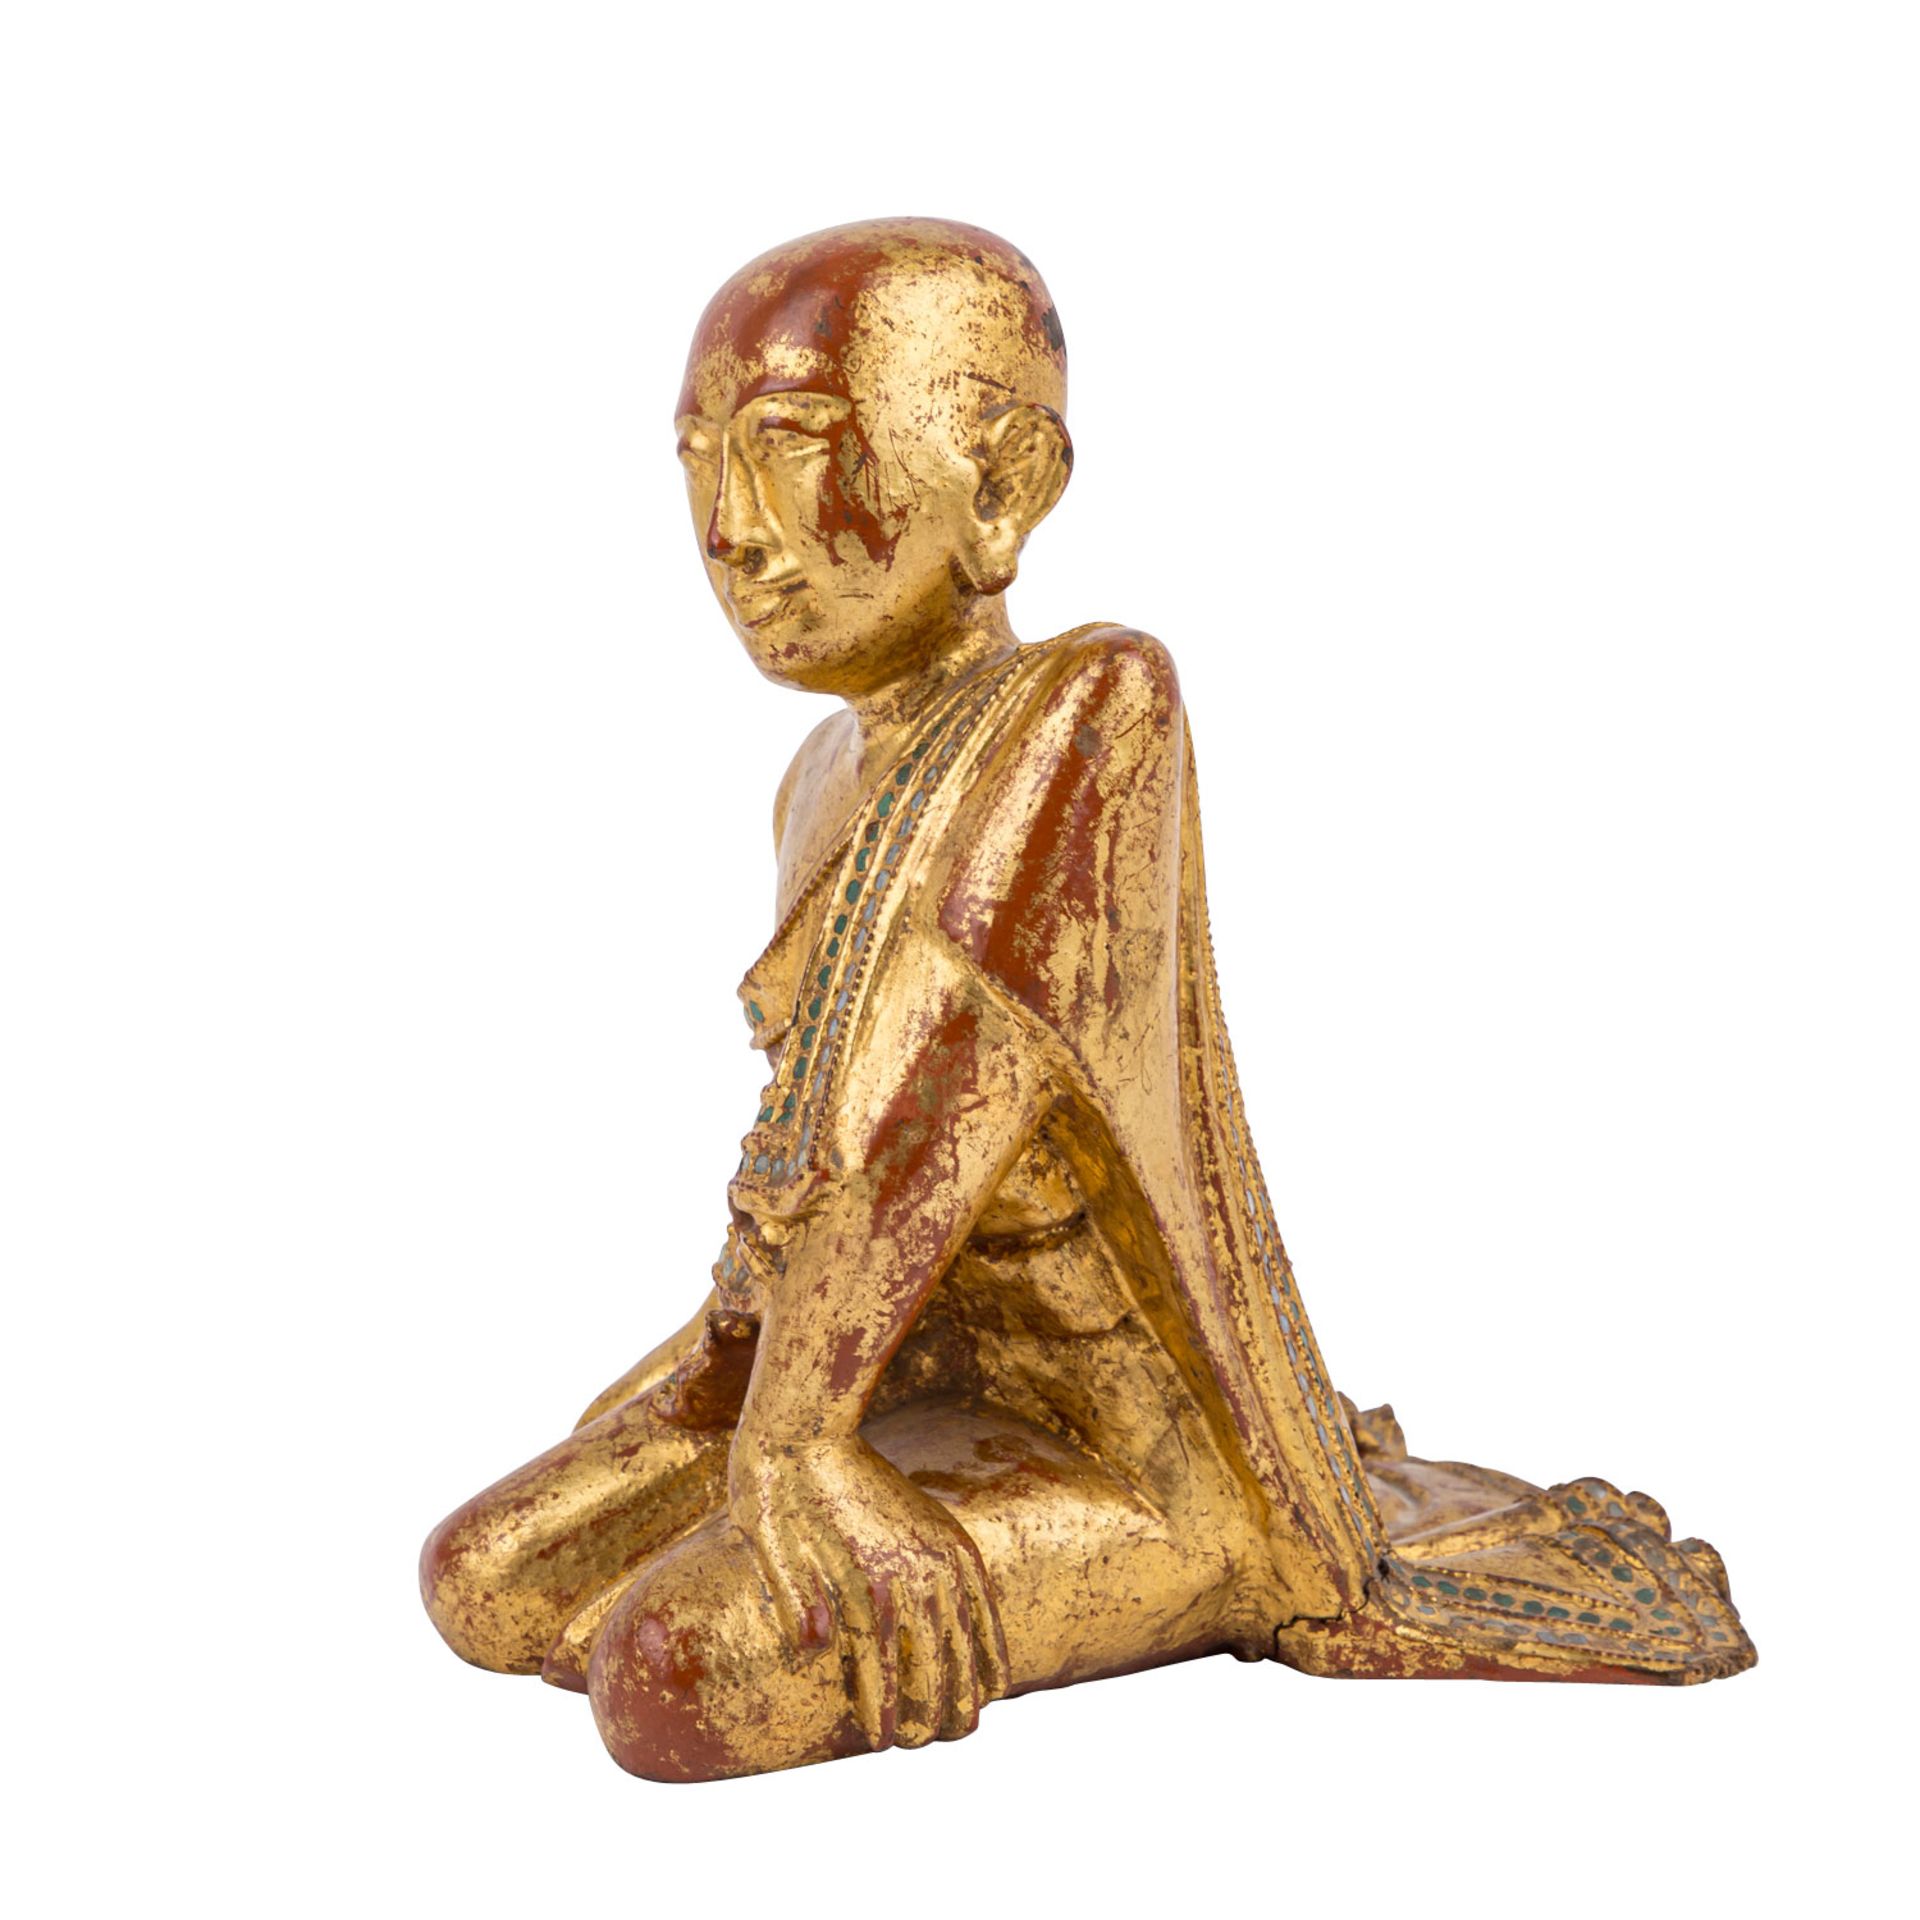 Skulptur eines Mönches aus Holz. BURMA, wohl um 1800.Knieende Darstellung, mehrfach lackiert ( - Bild 2 aus 6